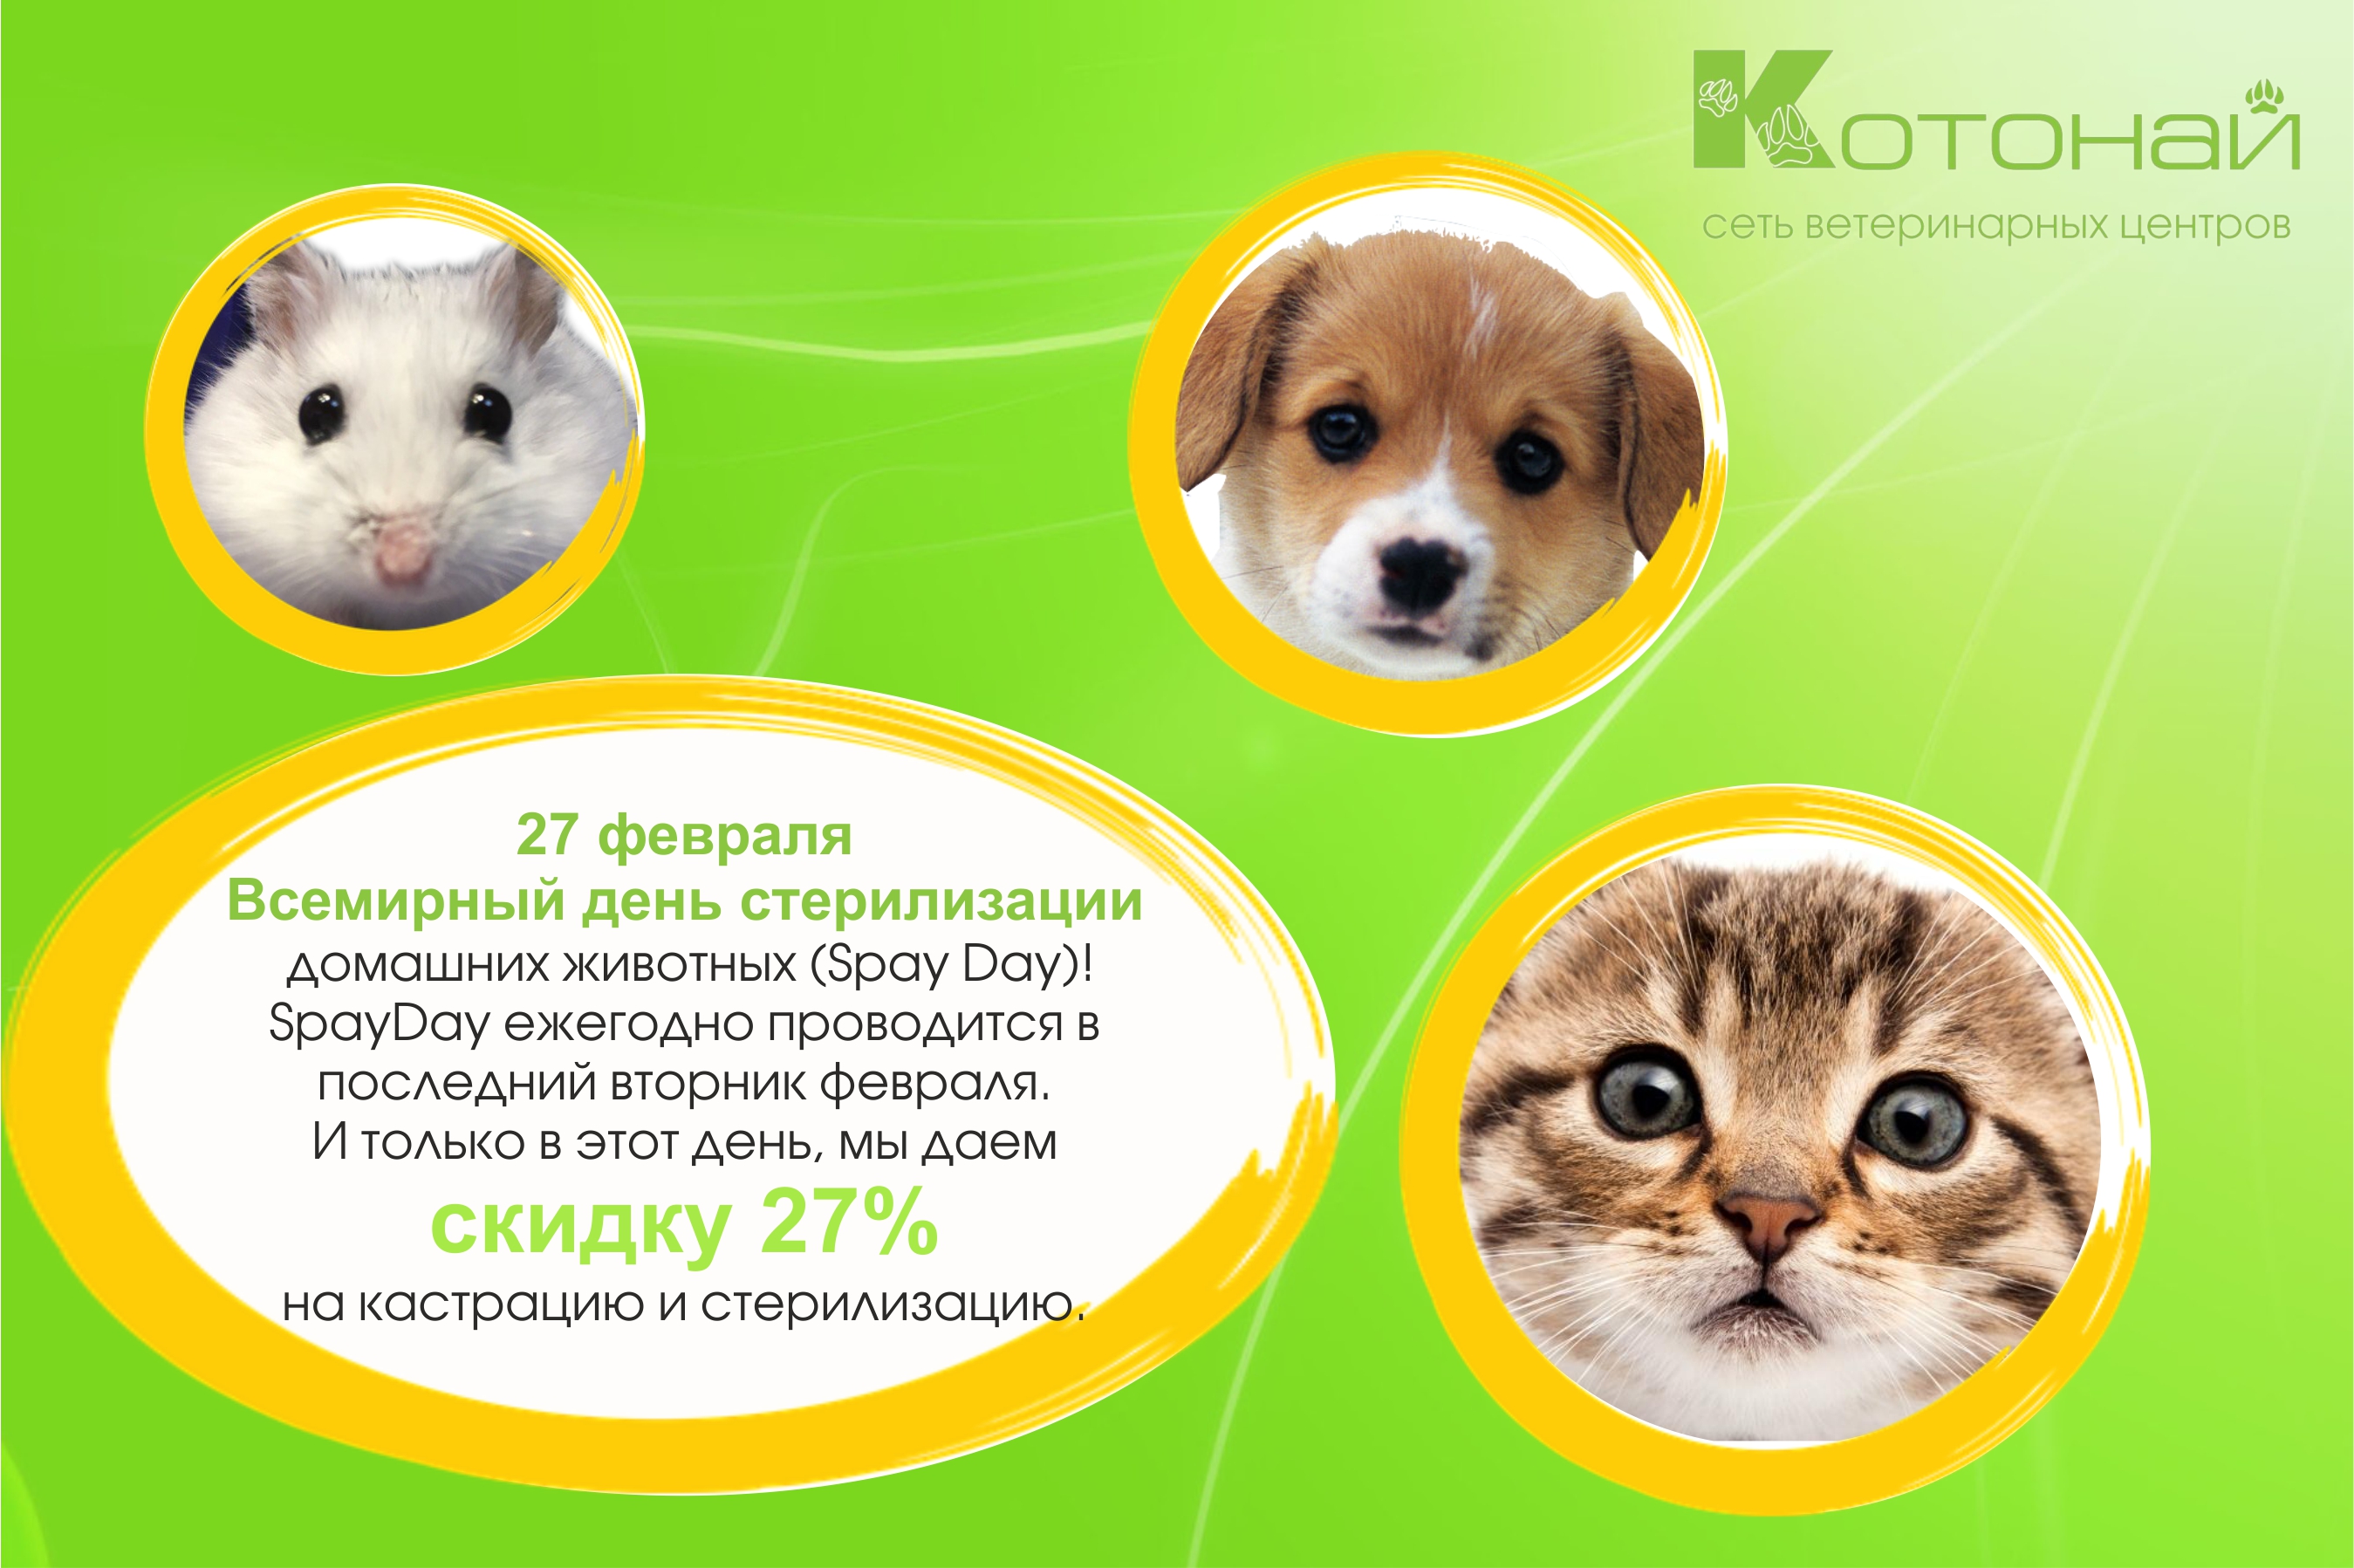 27 февраля - Всемирный день стерилизации домашних животных (Spay Day)!